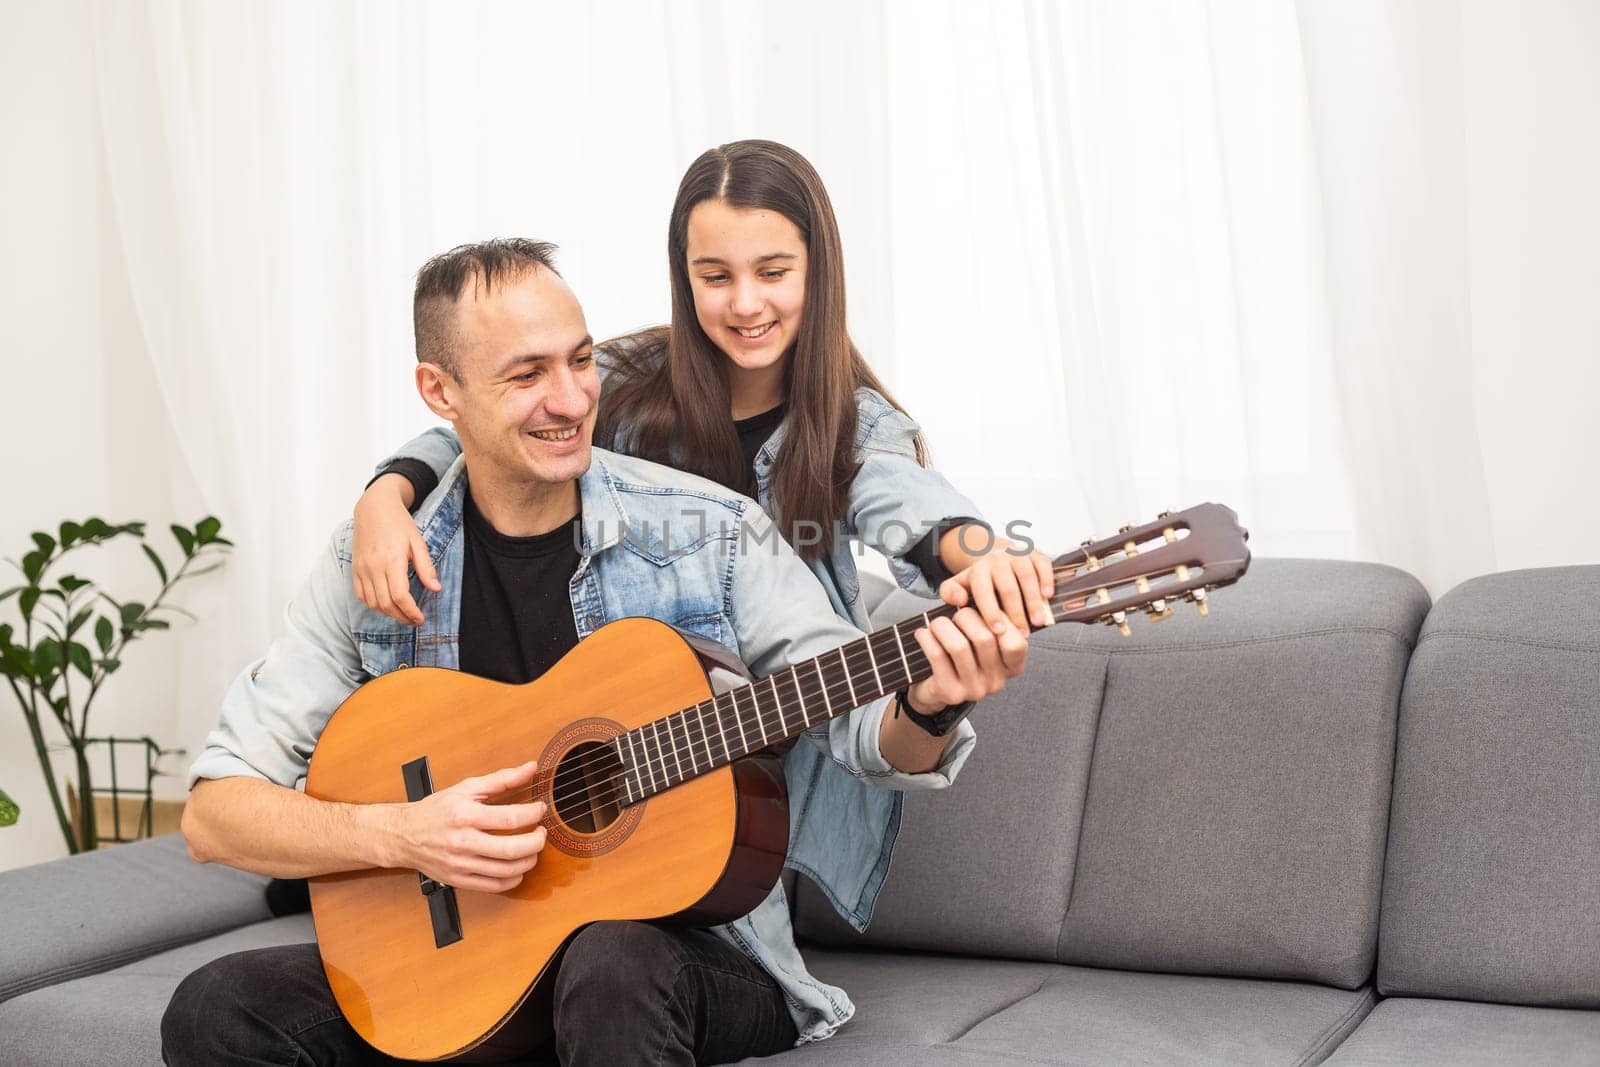 Guitar teacher teaching the little girl by Andelov13